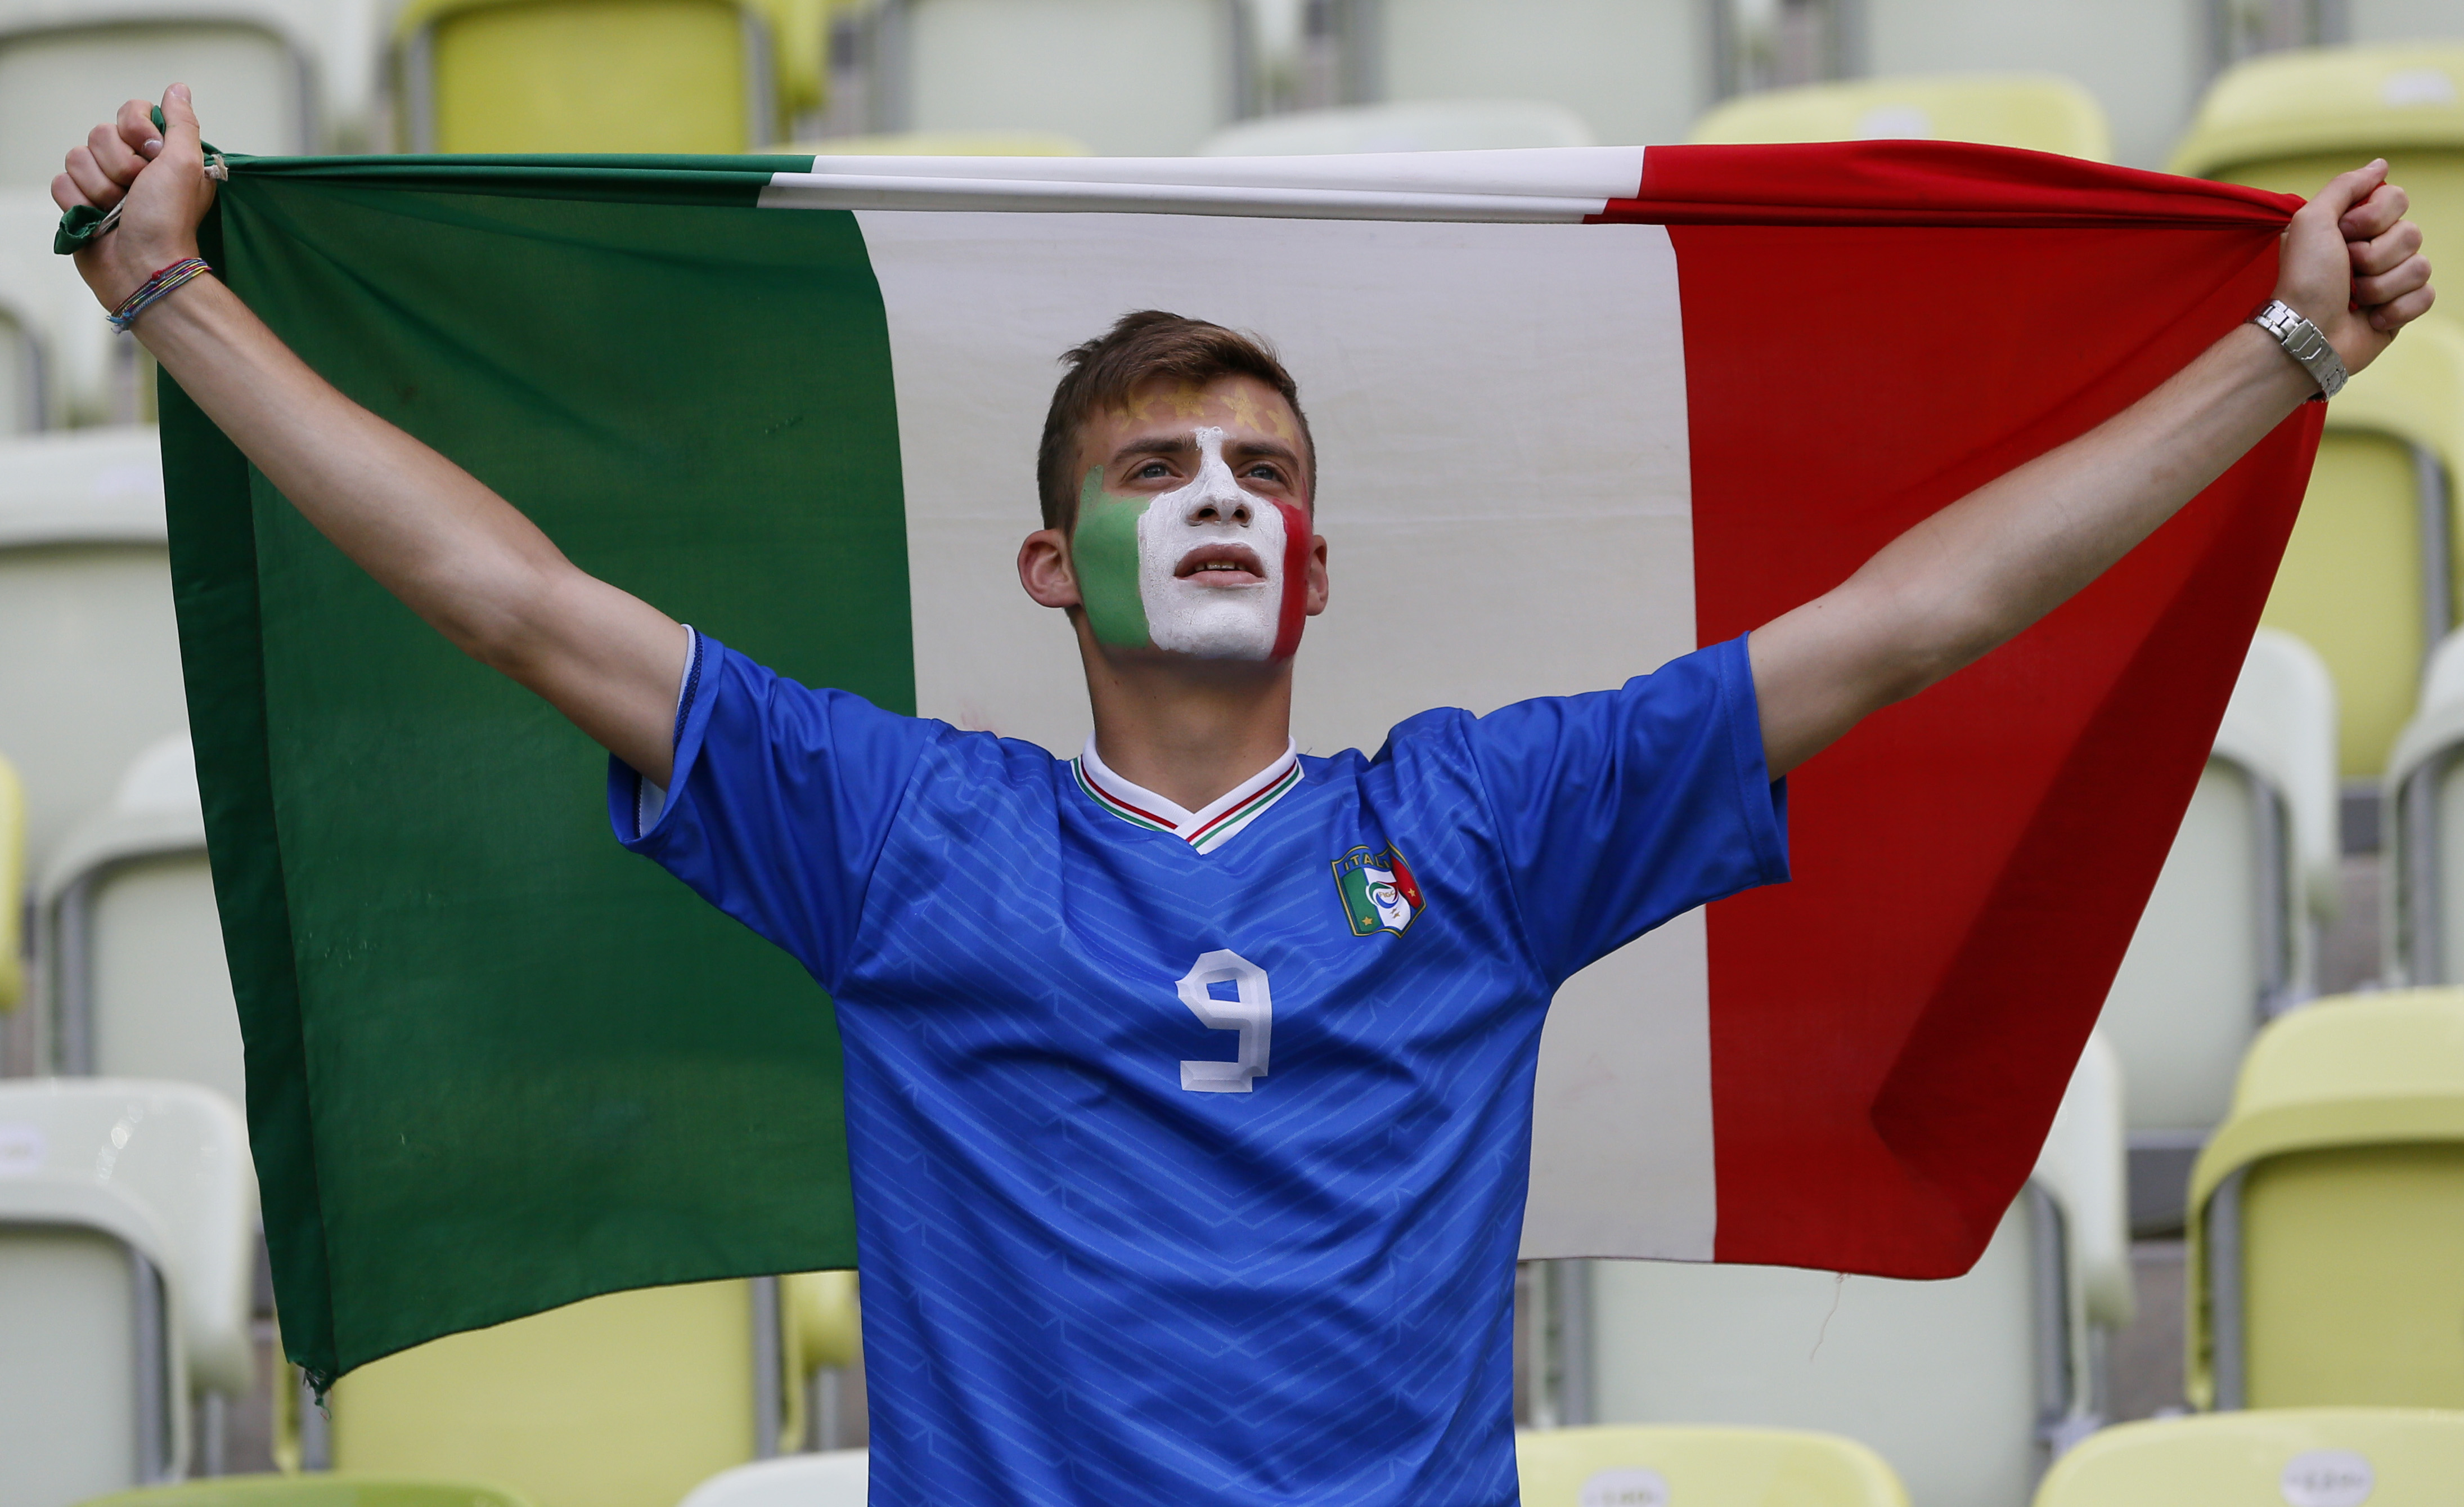 De italienska fansen är inte vana vid att vara underdogs - nu slår dem ur underläge mot Spanien.